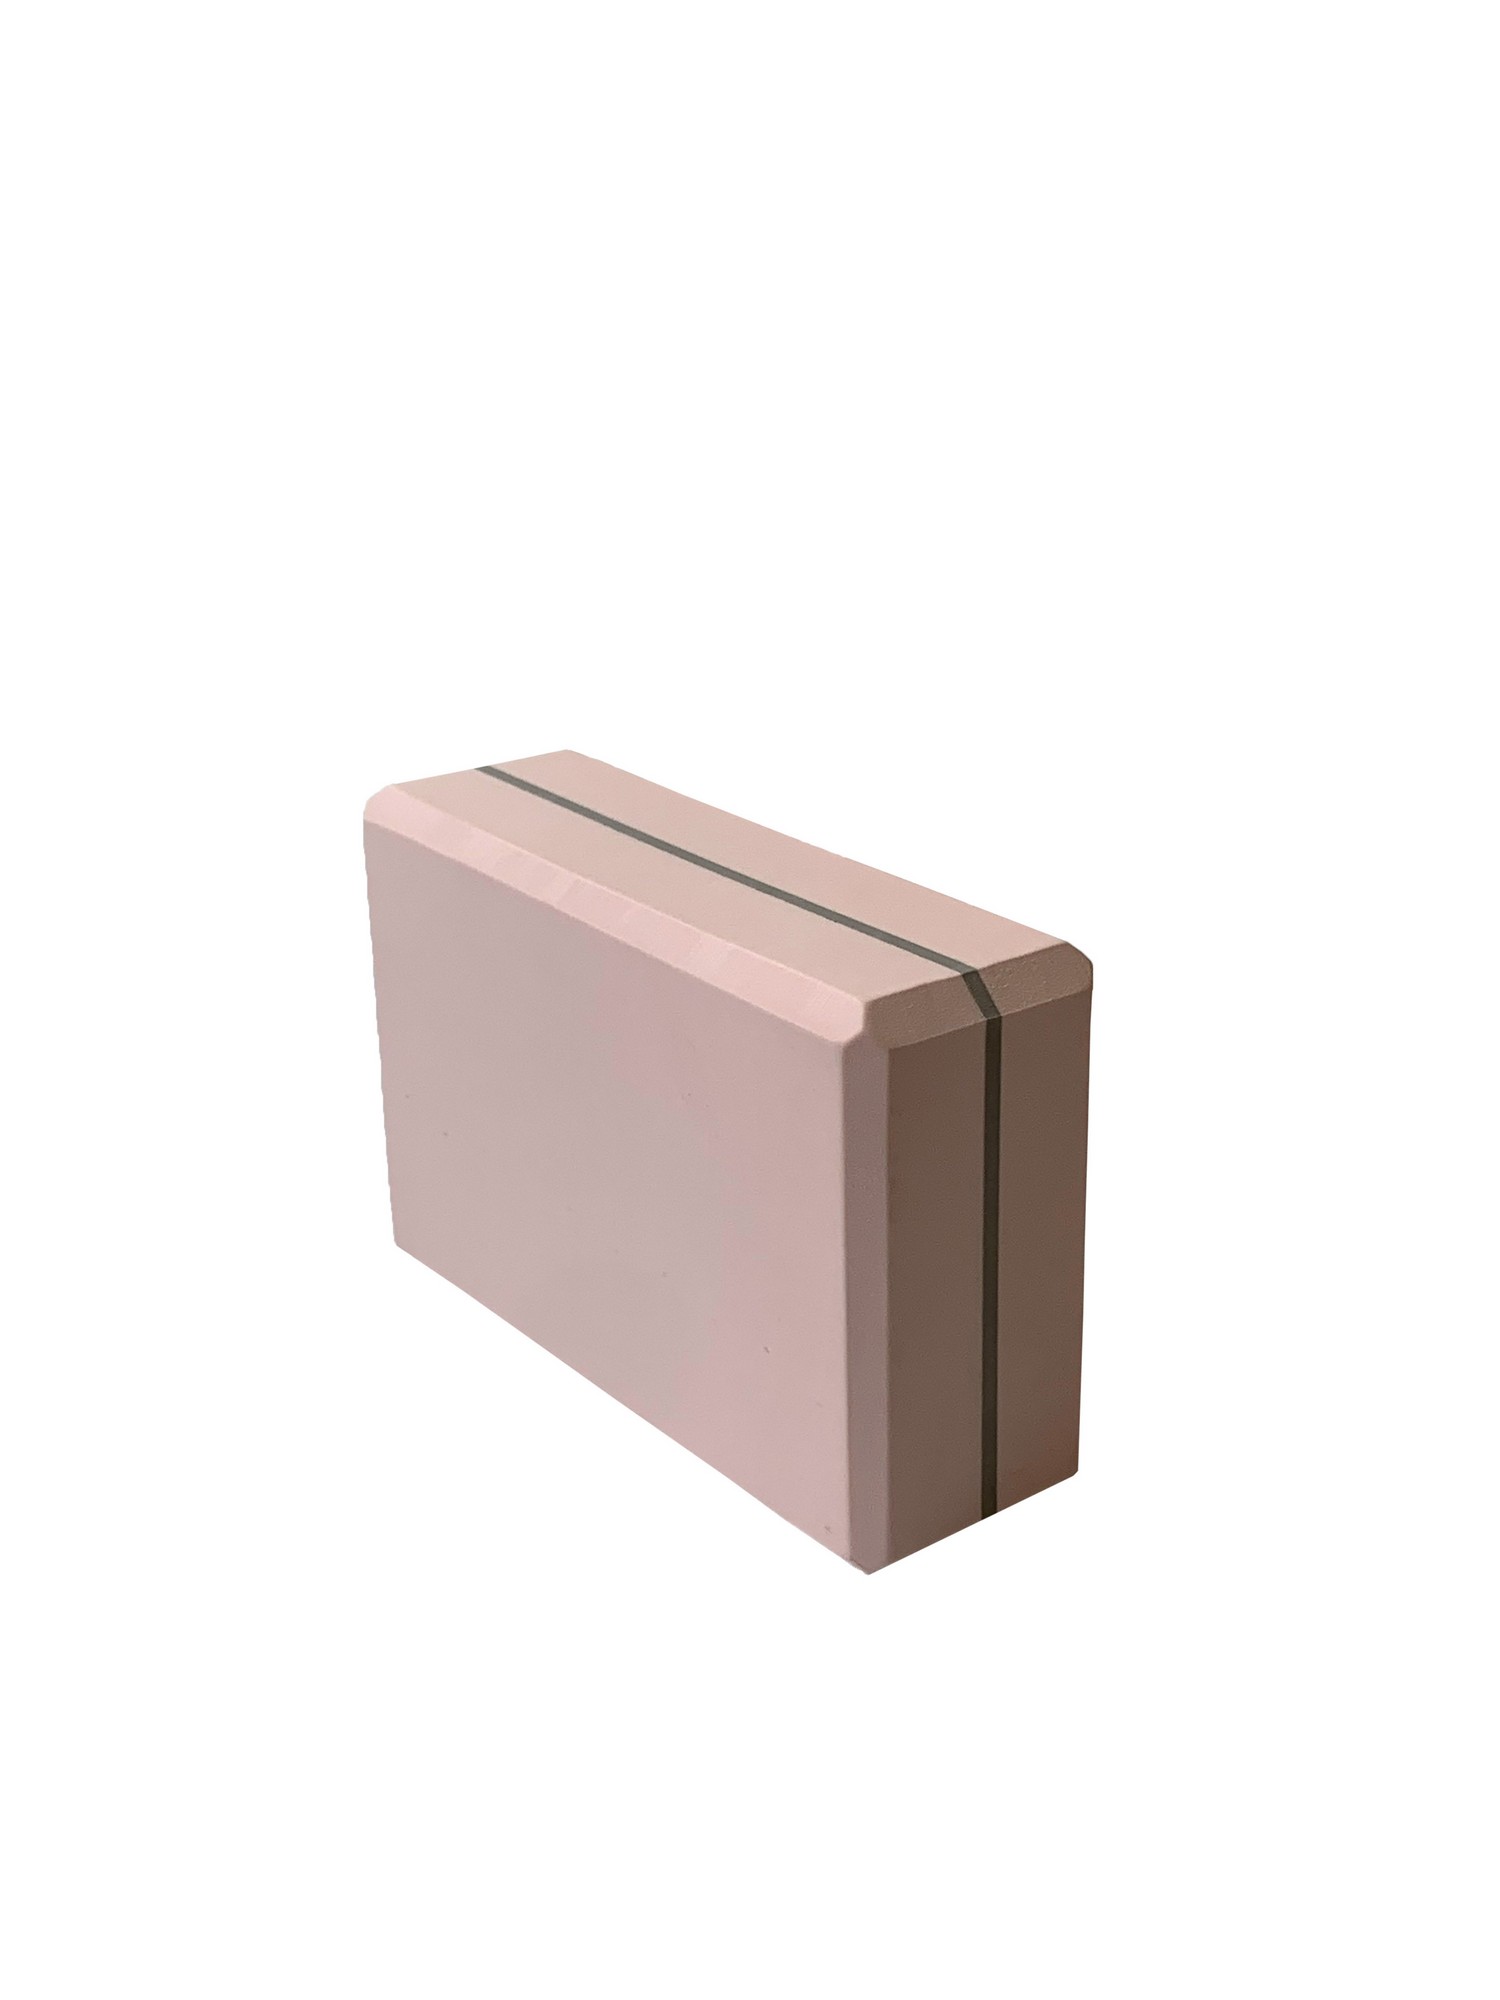 Йога блок Sportex полумягкий, из вспененного ЭВА 22,3х15х7,6 см E39131-33 светло розовый